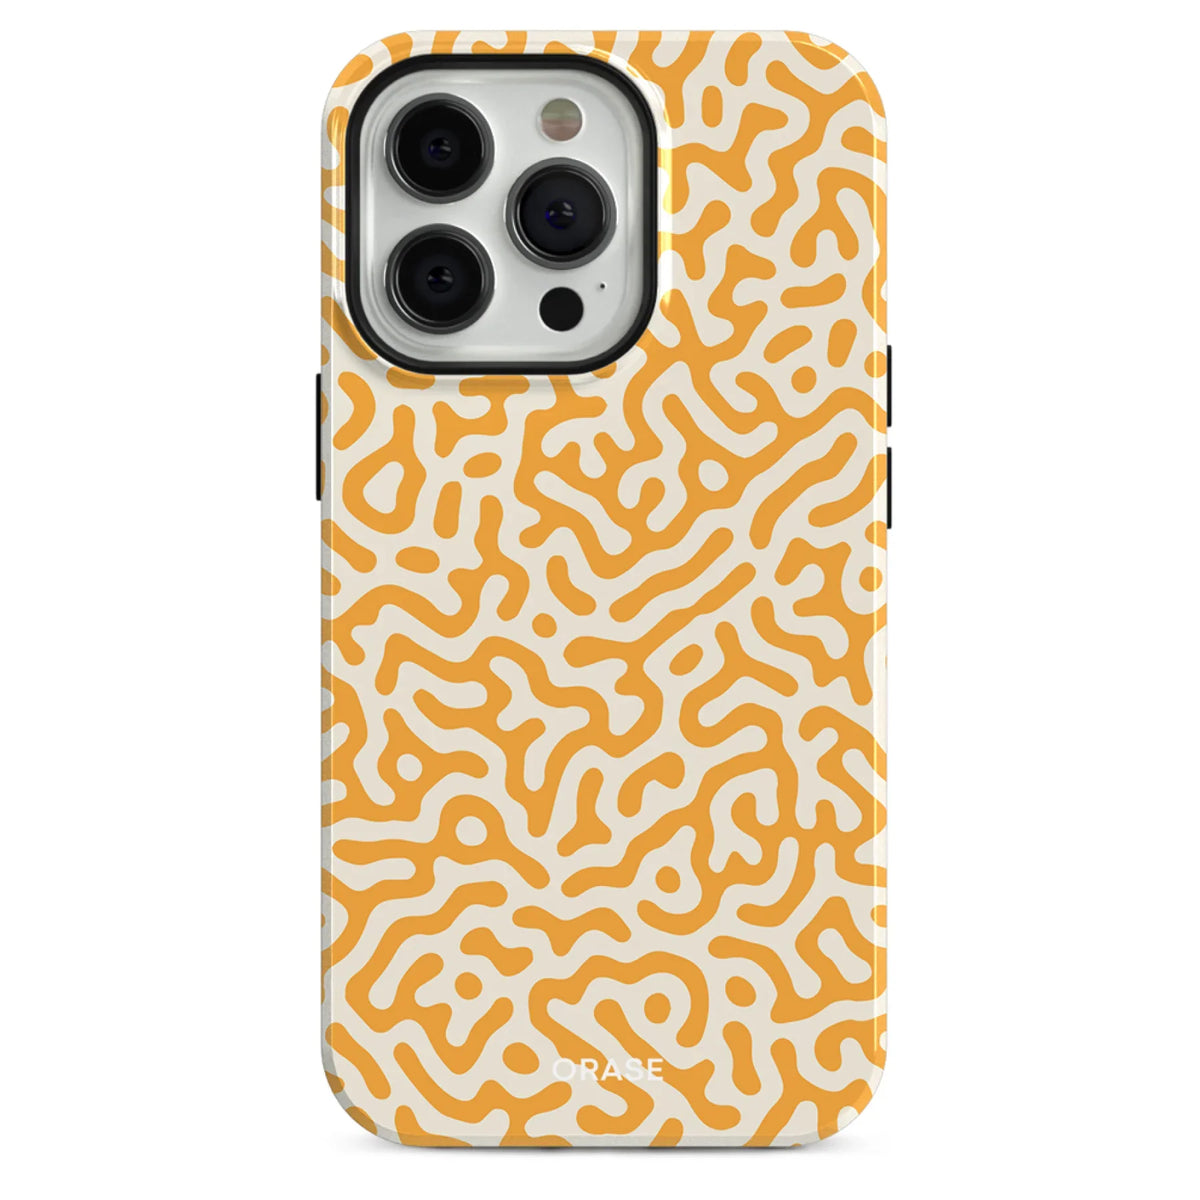 Lune Orange iPhone Case - iPhone 12 Pro